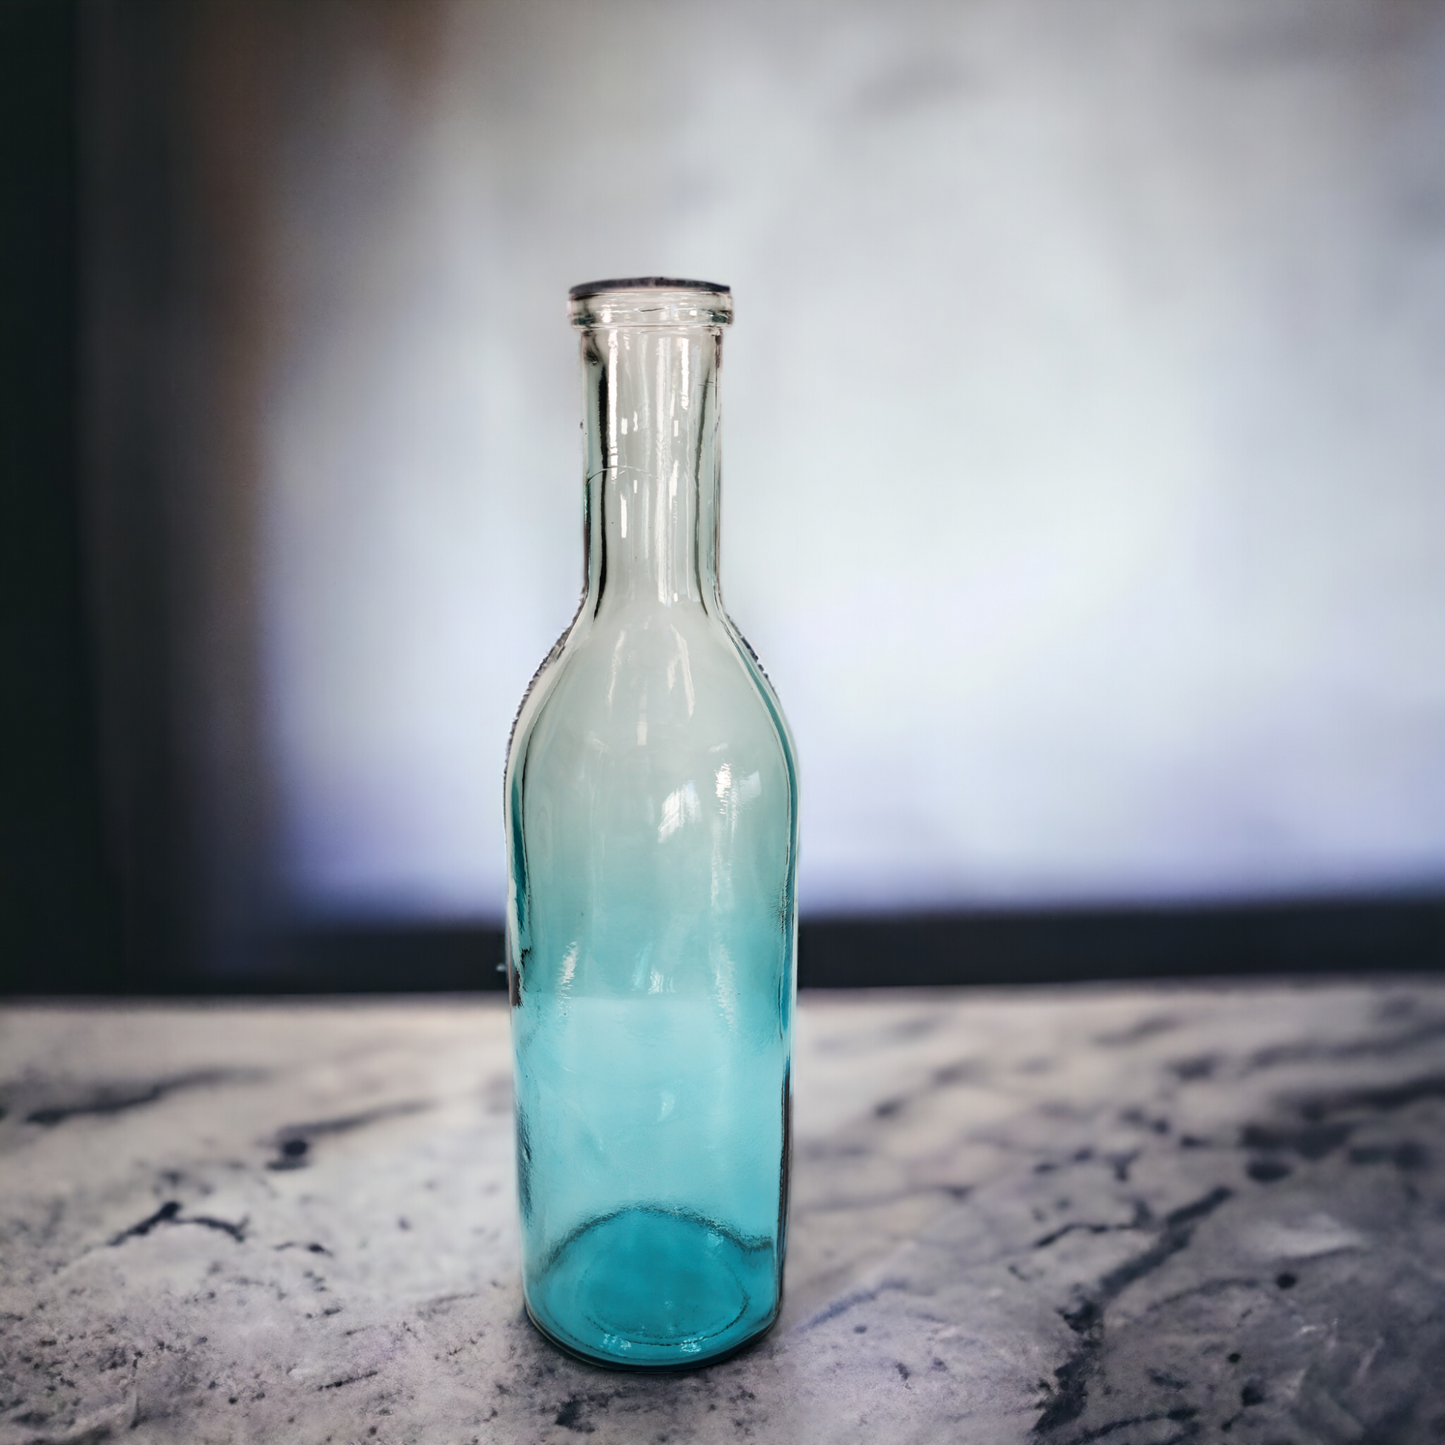 Vase - Flaschenvase "Rioja" mit blauem Farbverlauf - 50 cm